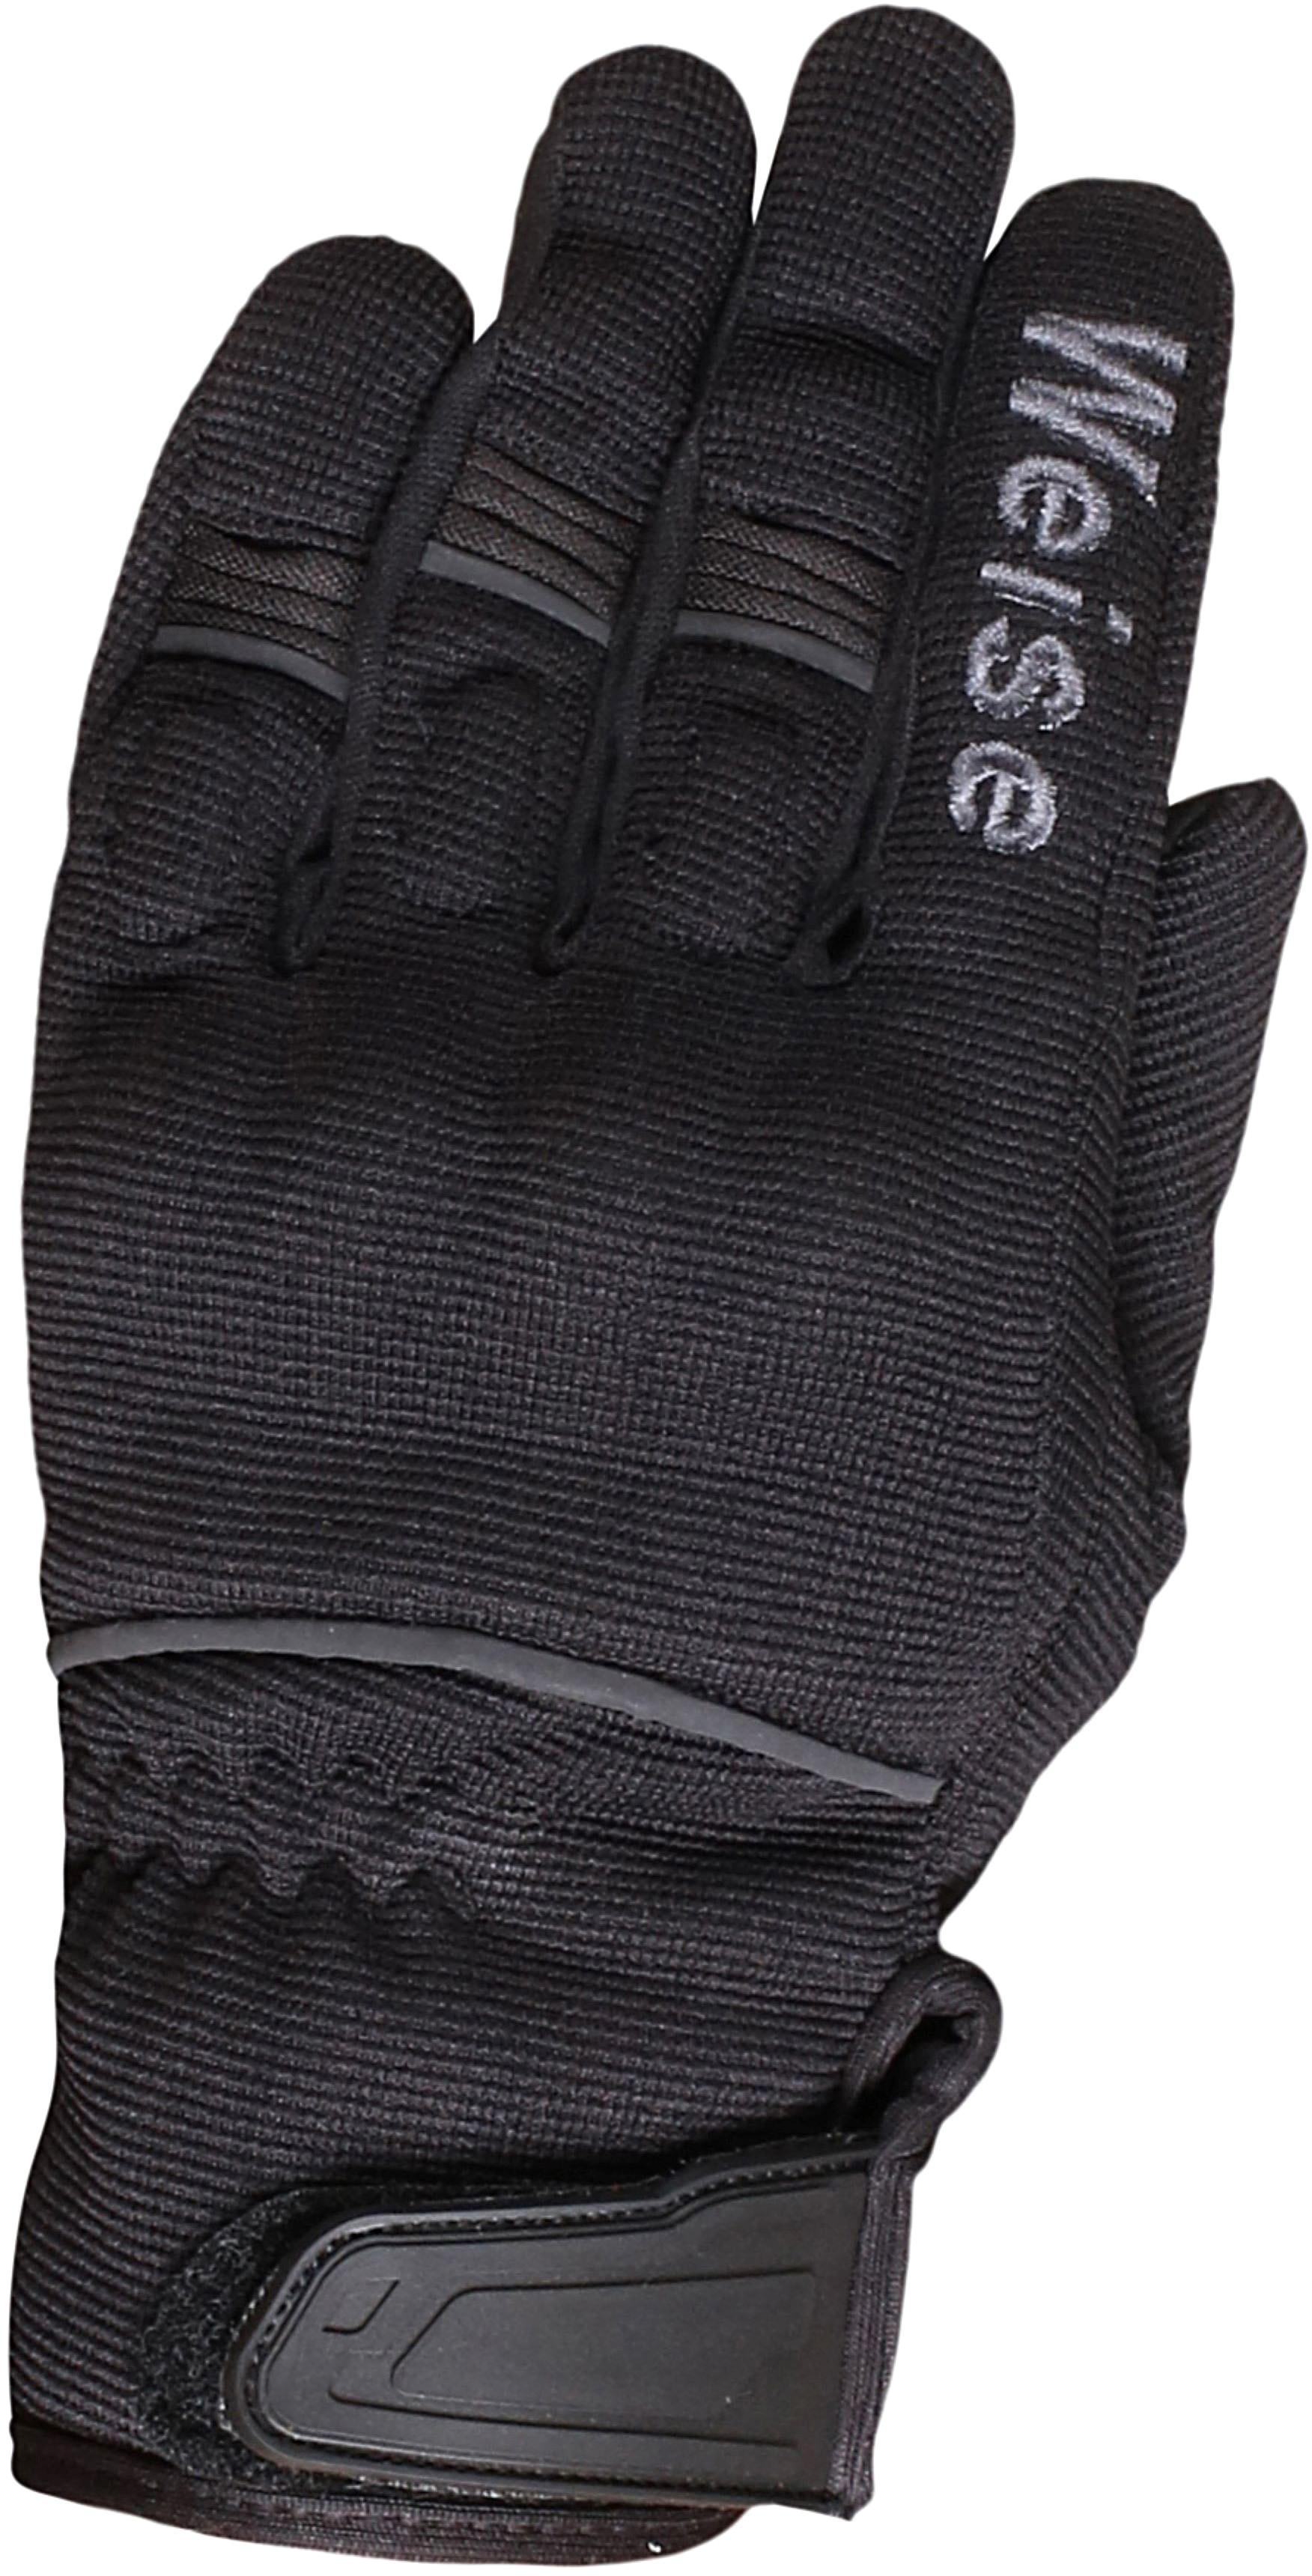 Weise Motorcycle Pit Gloves - Black/Gunmetal, Xl